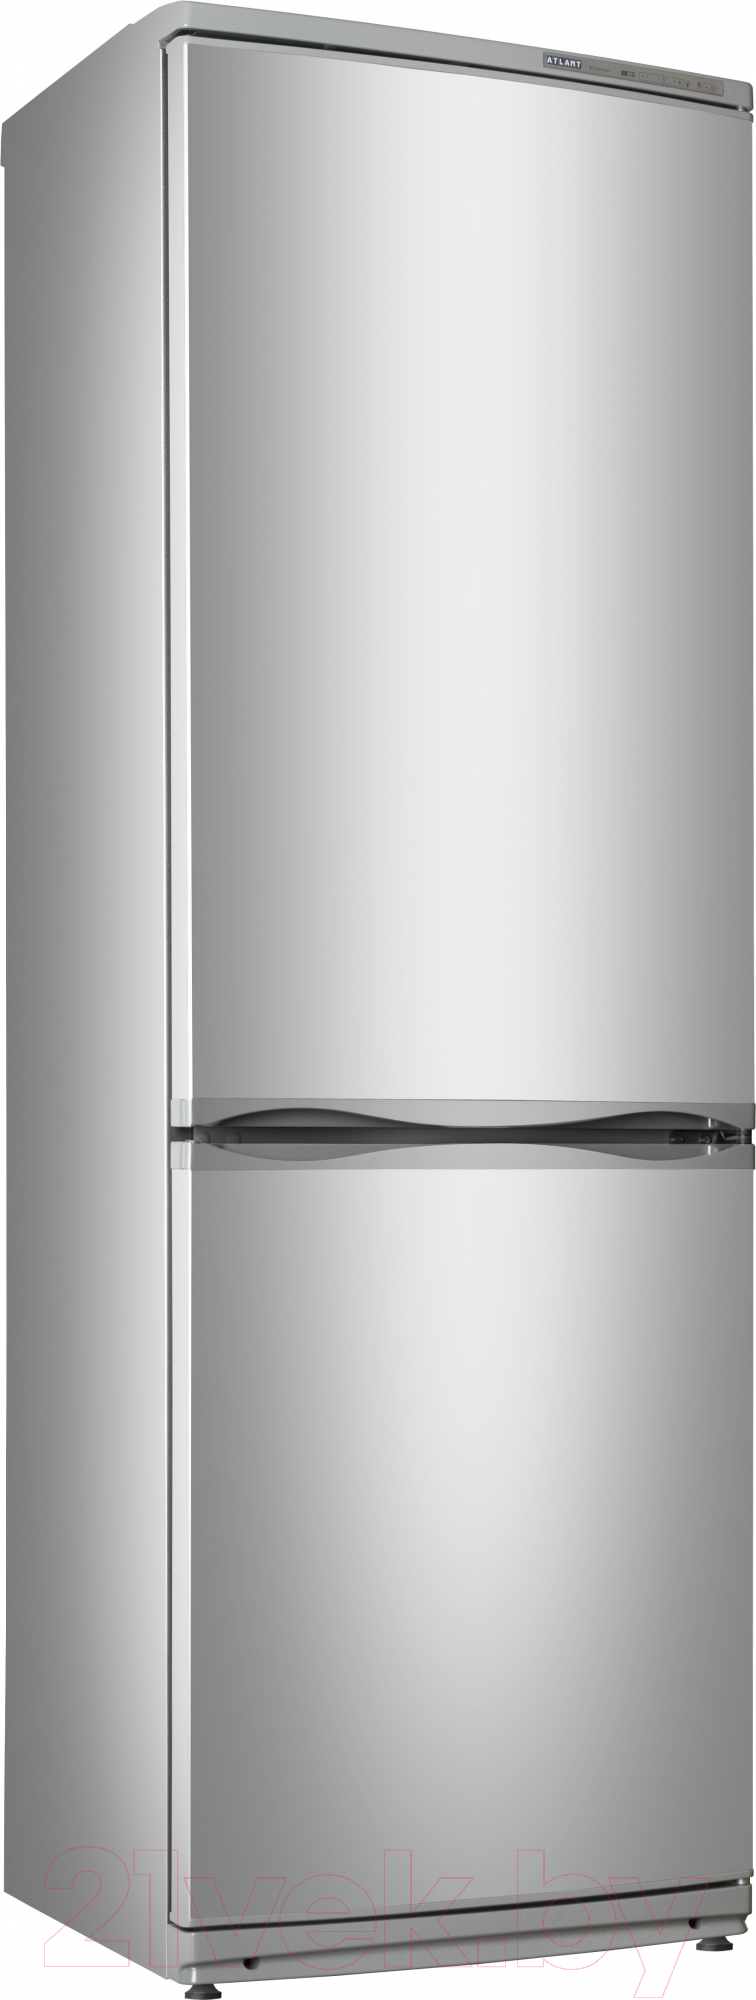 Ремонт холодильников Атлант — неисправности, диагностика, видео